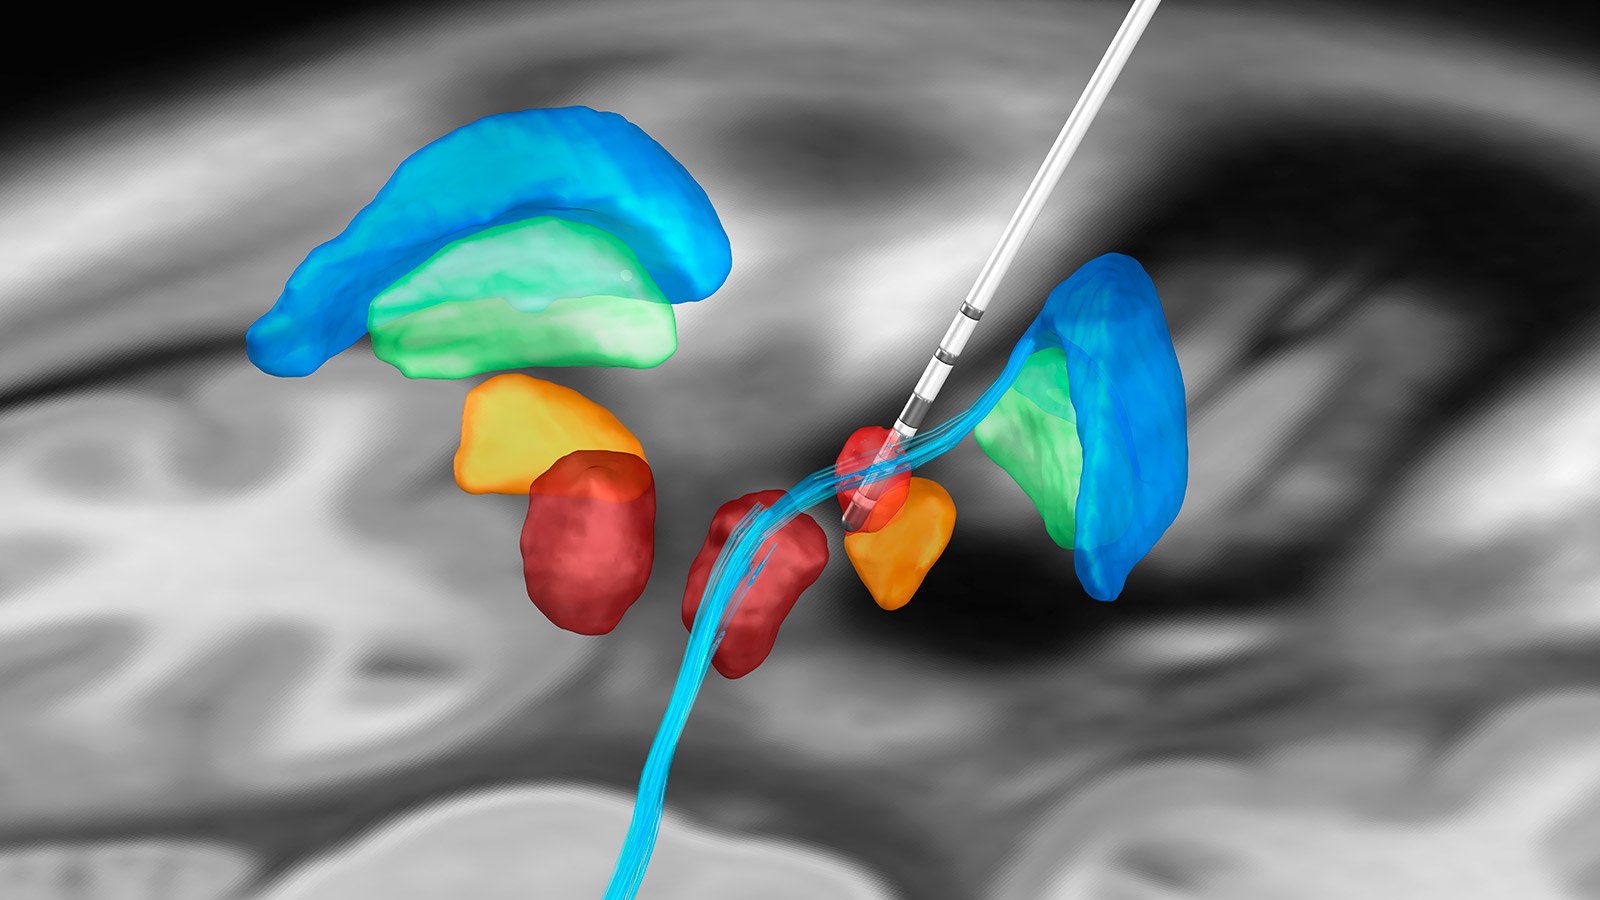 Abbildung einer DBS-Elektrode und wichtiger anatomischer Strukturen für die Stimulation